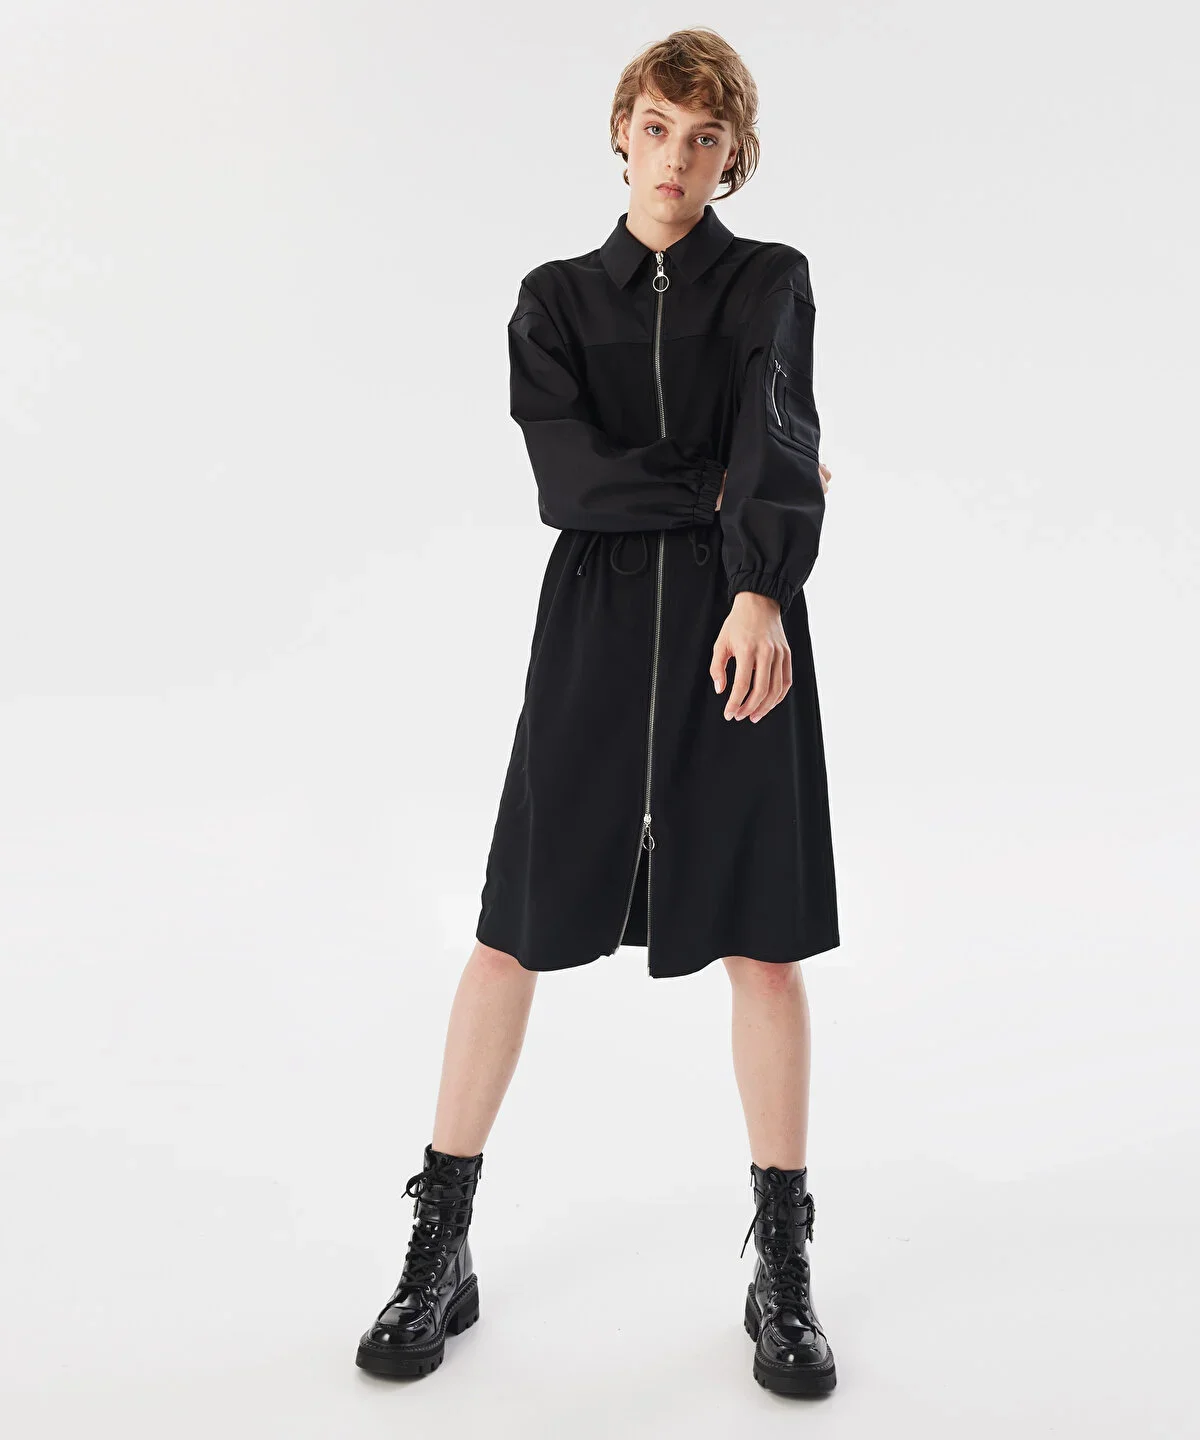 Kadın Kumaş Mix Midi Elbise - Siyah - 1